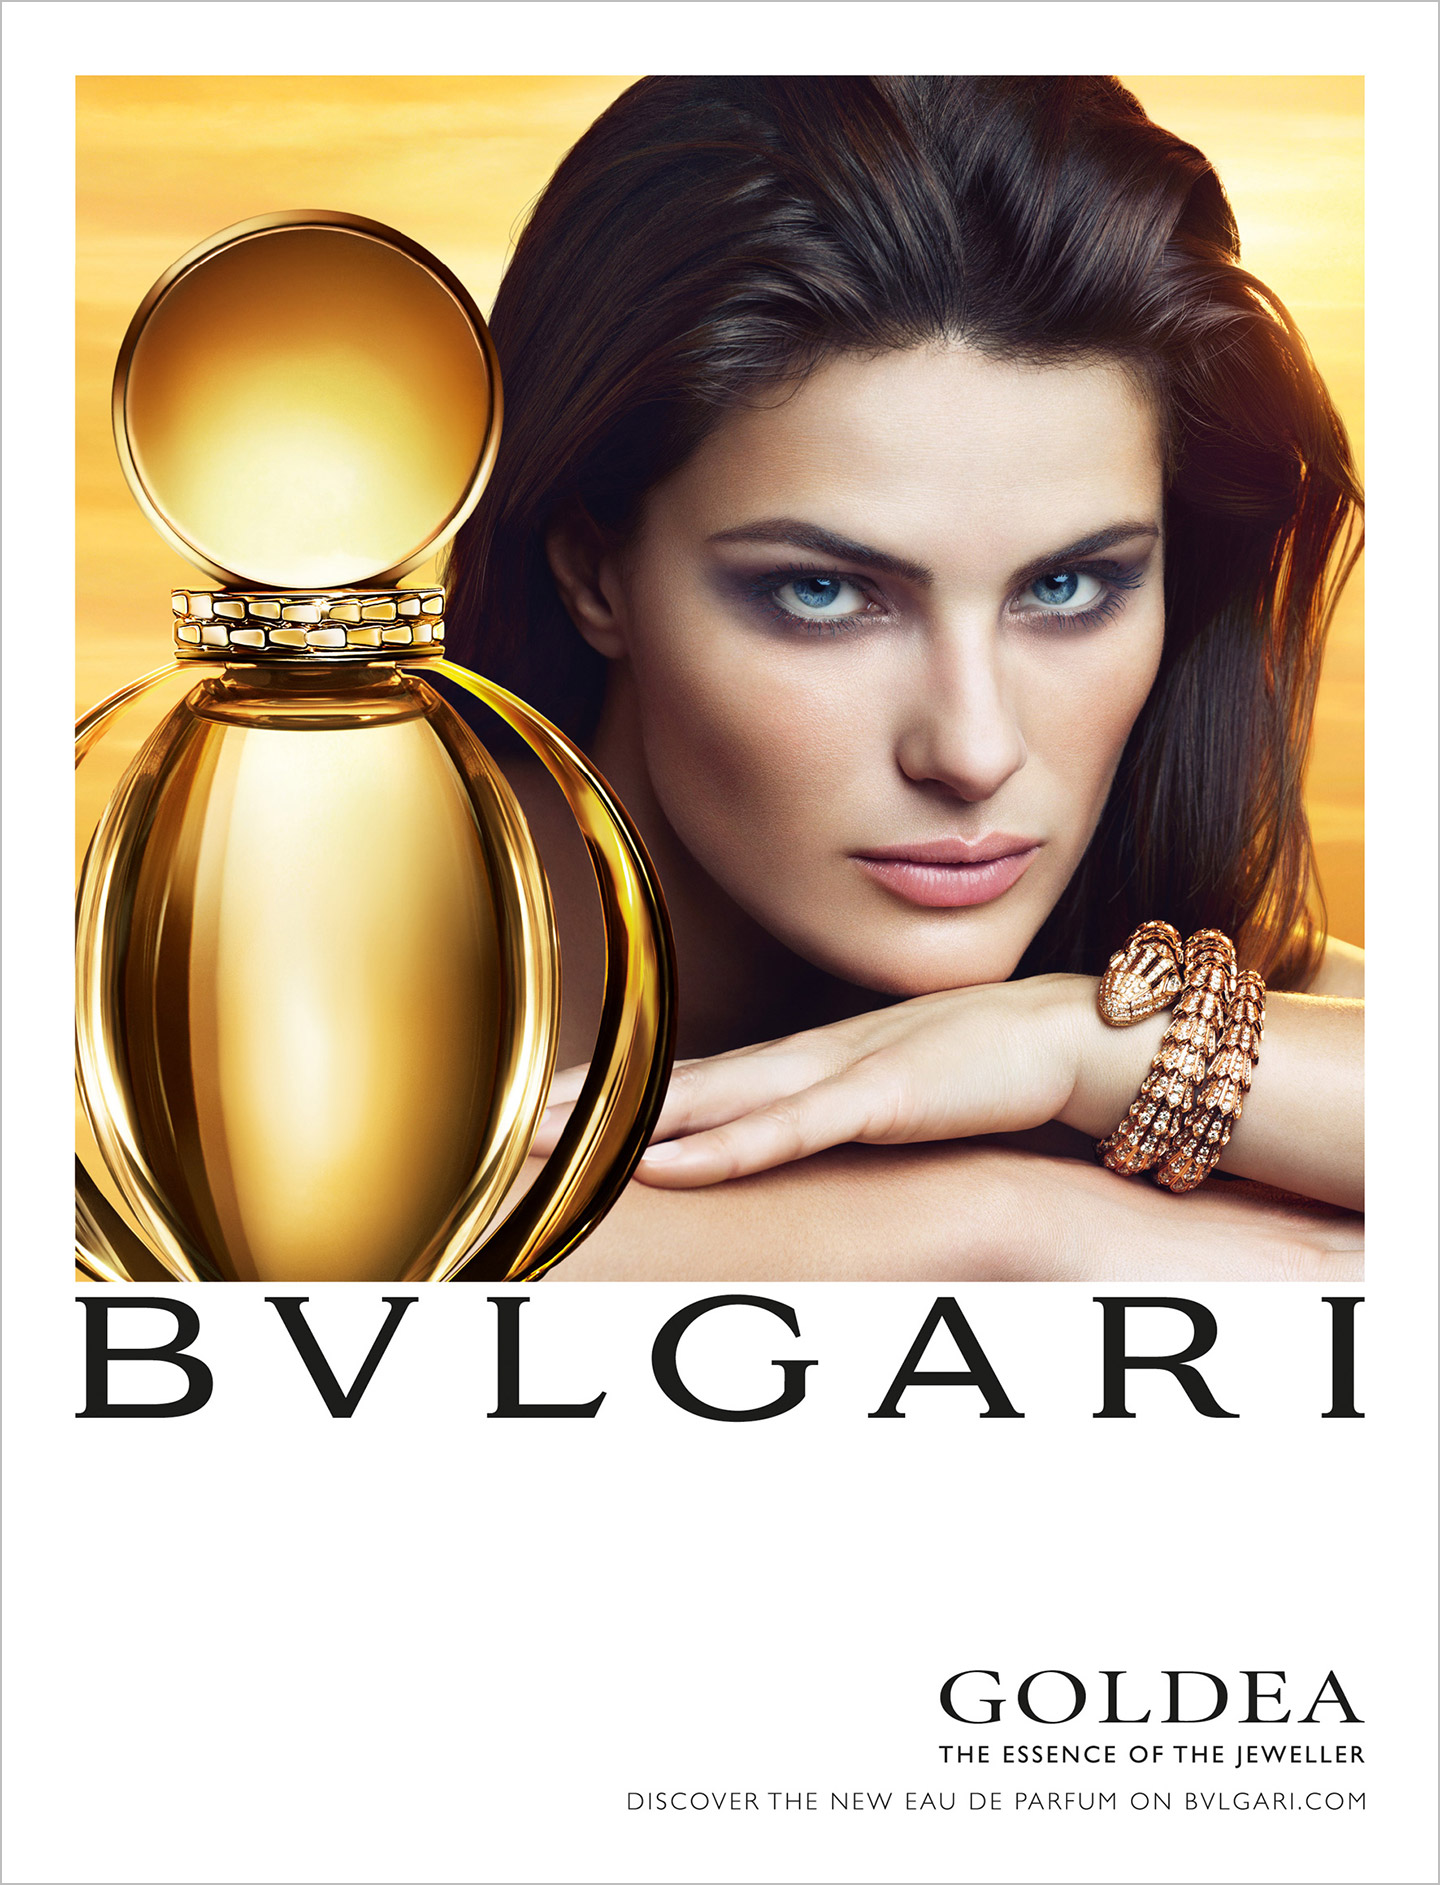 bulgari goldea eau de parfum advertisement bvlgari